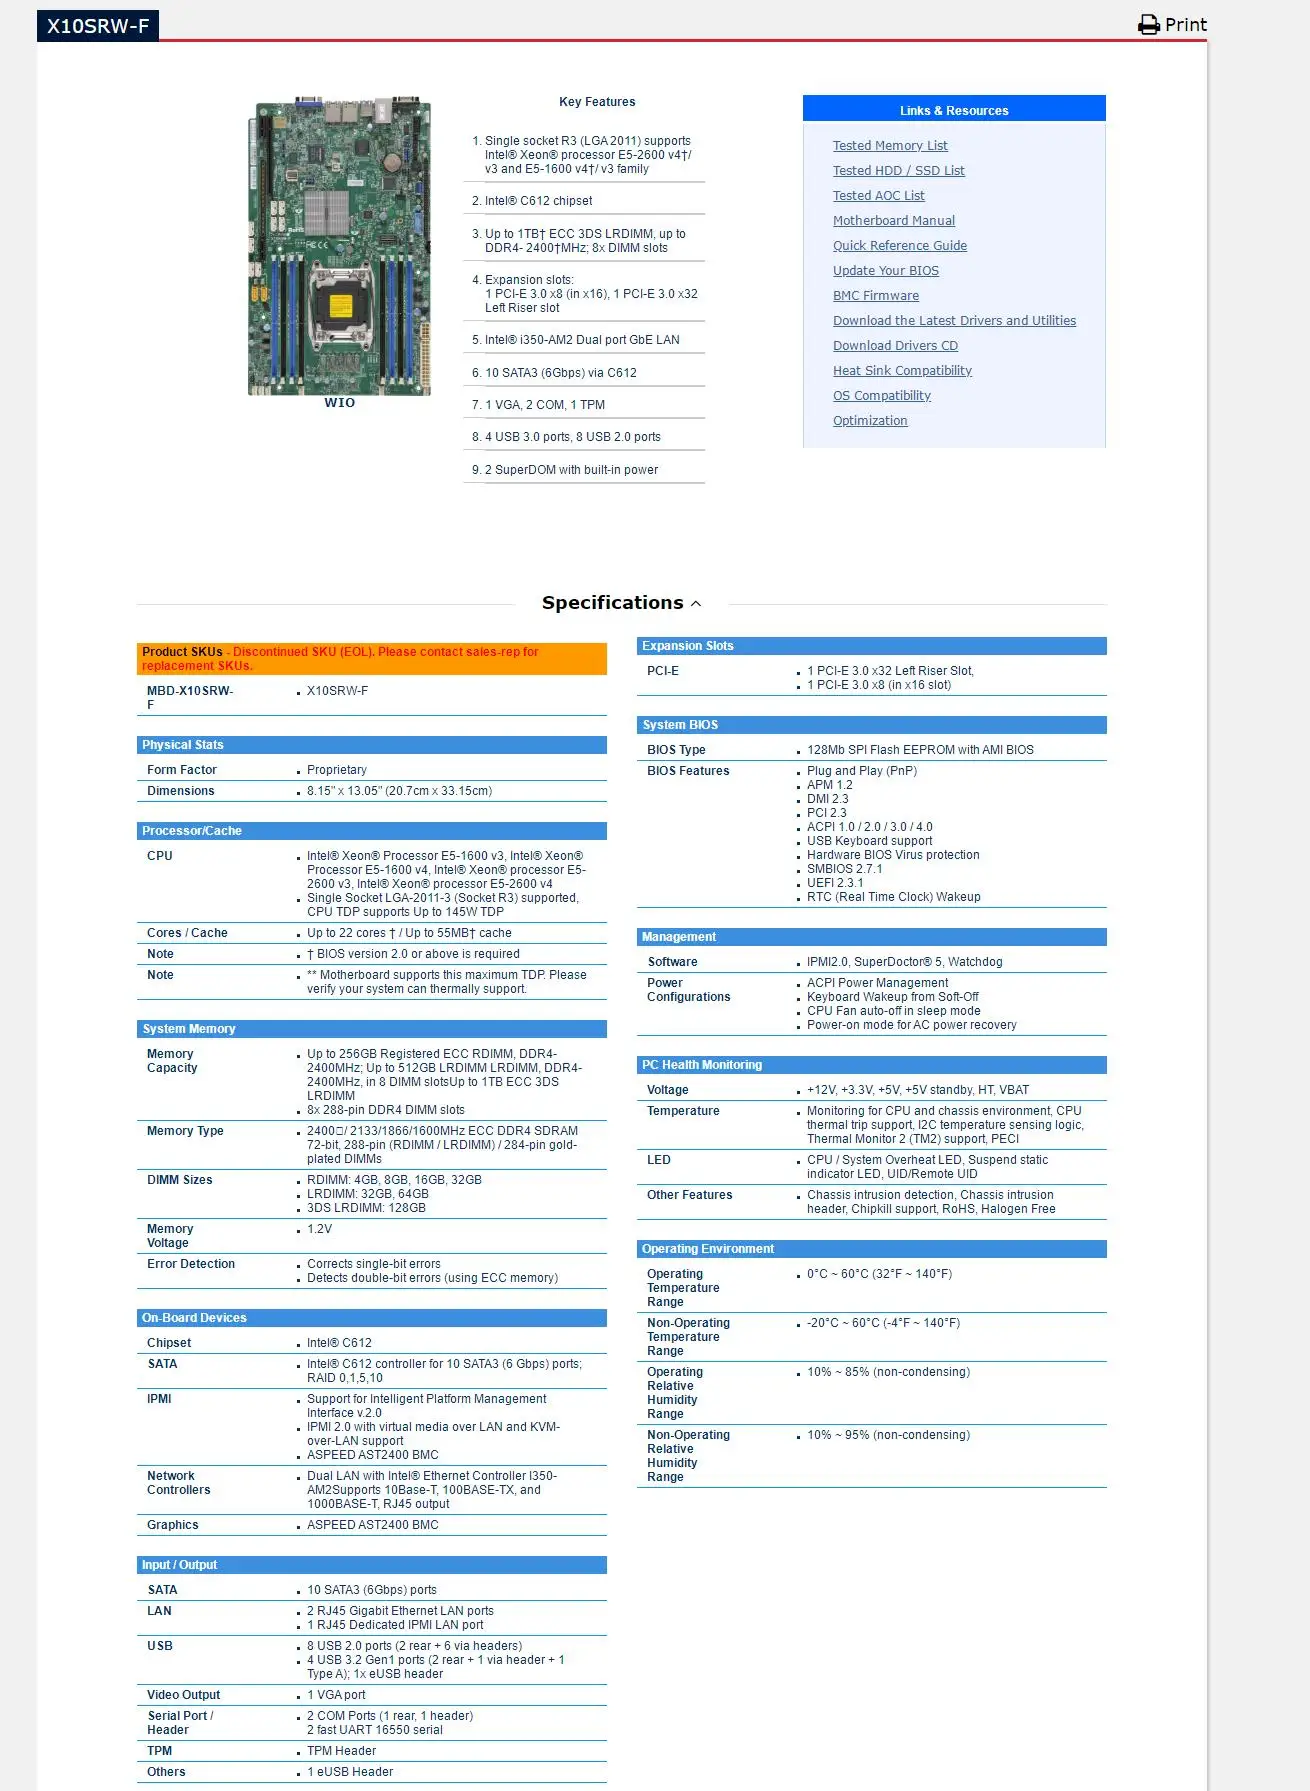 20個で送料込  S1200kp-Intelサーバー用マザーボード,s1200kp,家族用,Lga1155,E3-1200V1/v2,i3,Celeronプロセッサ2nd/3rd  クーポン発行中|Other - senfinances.sn